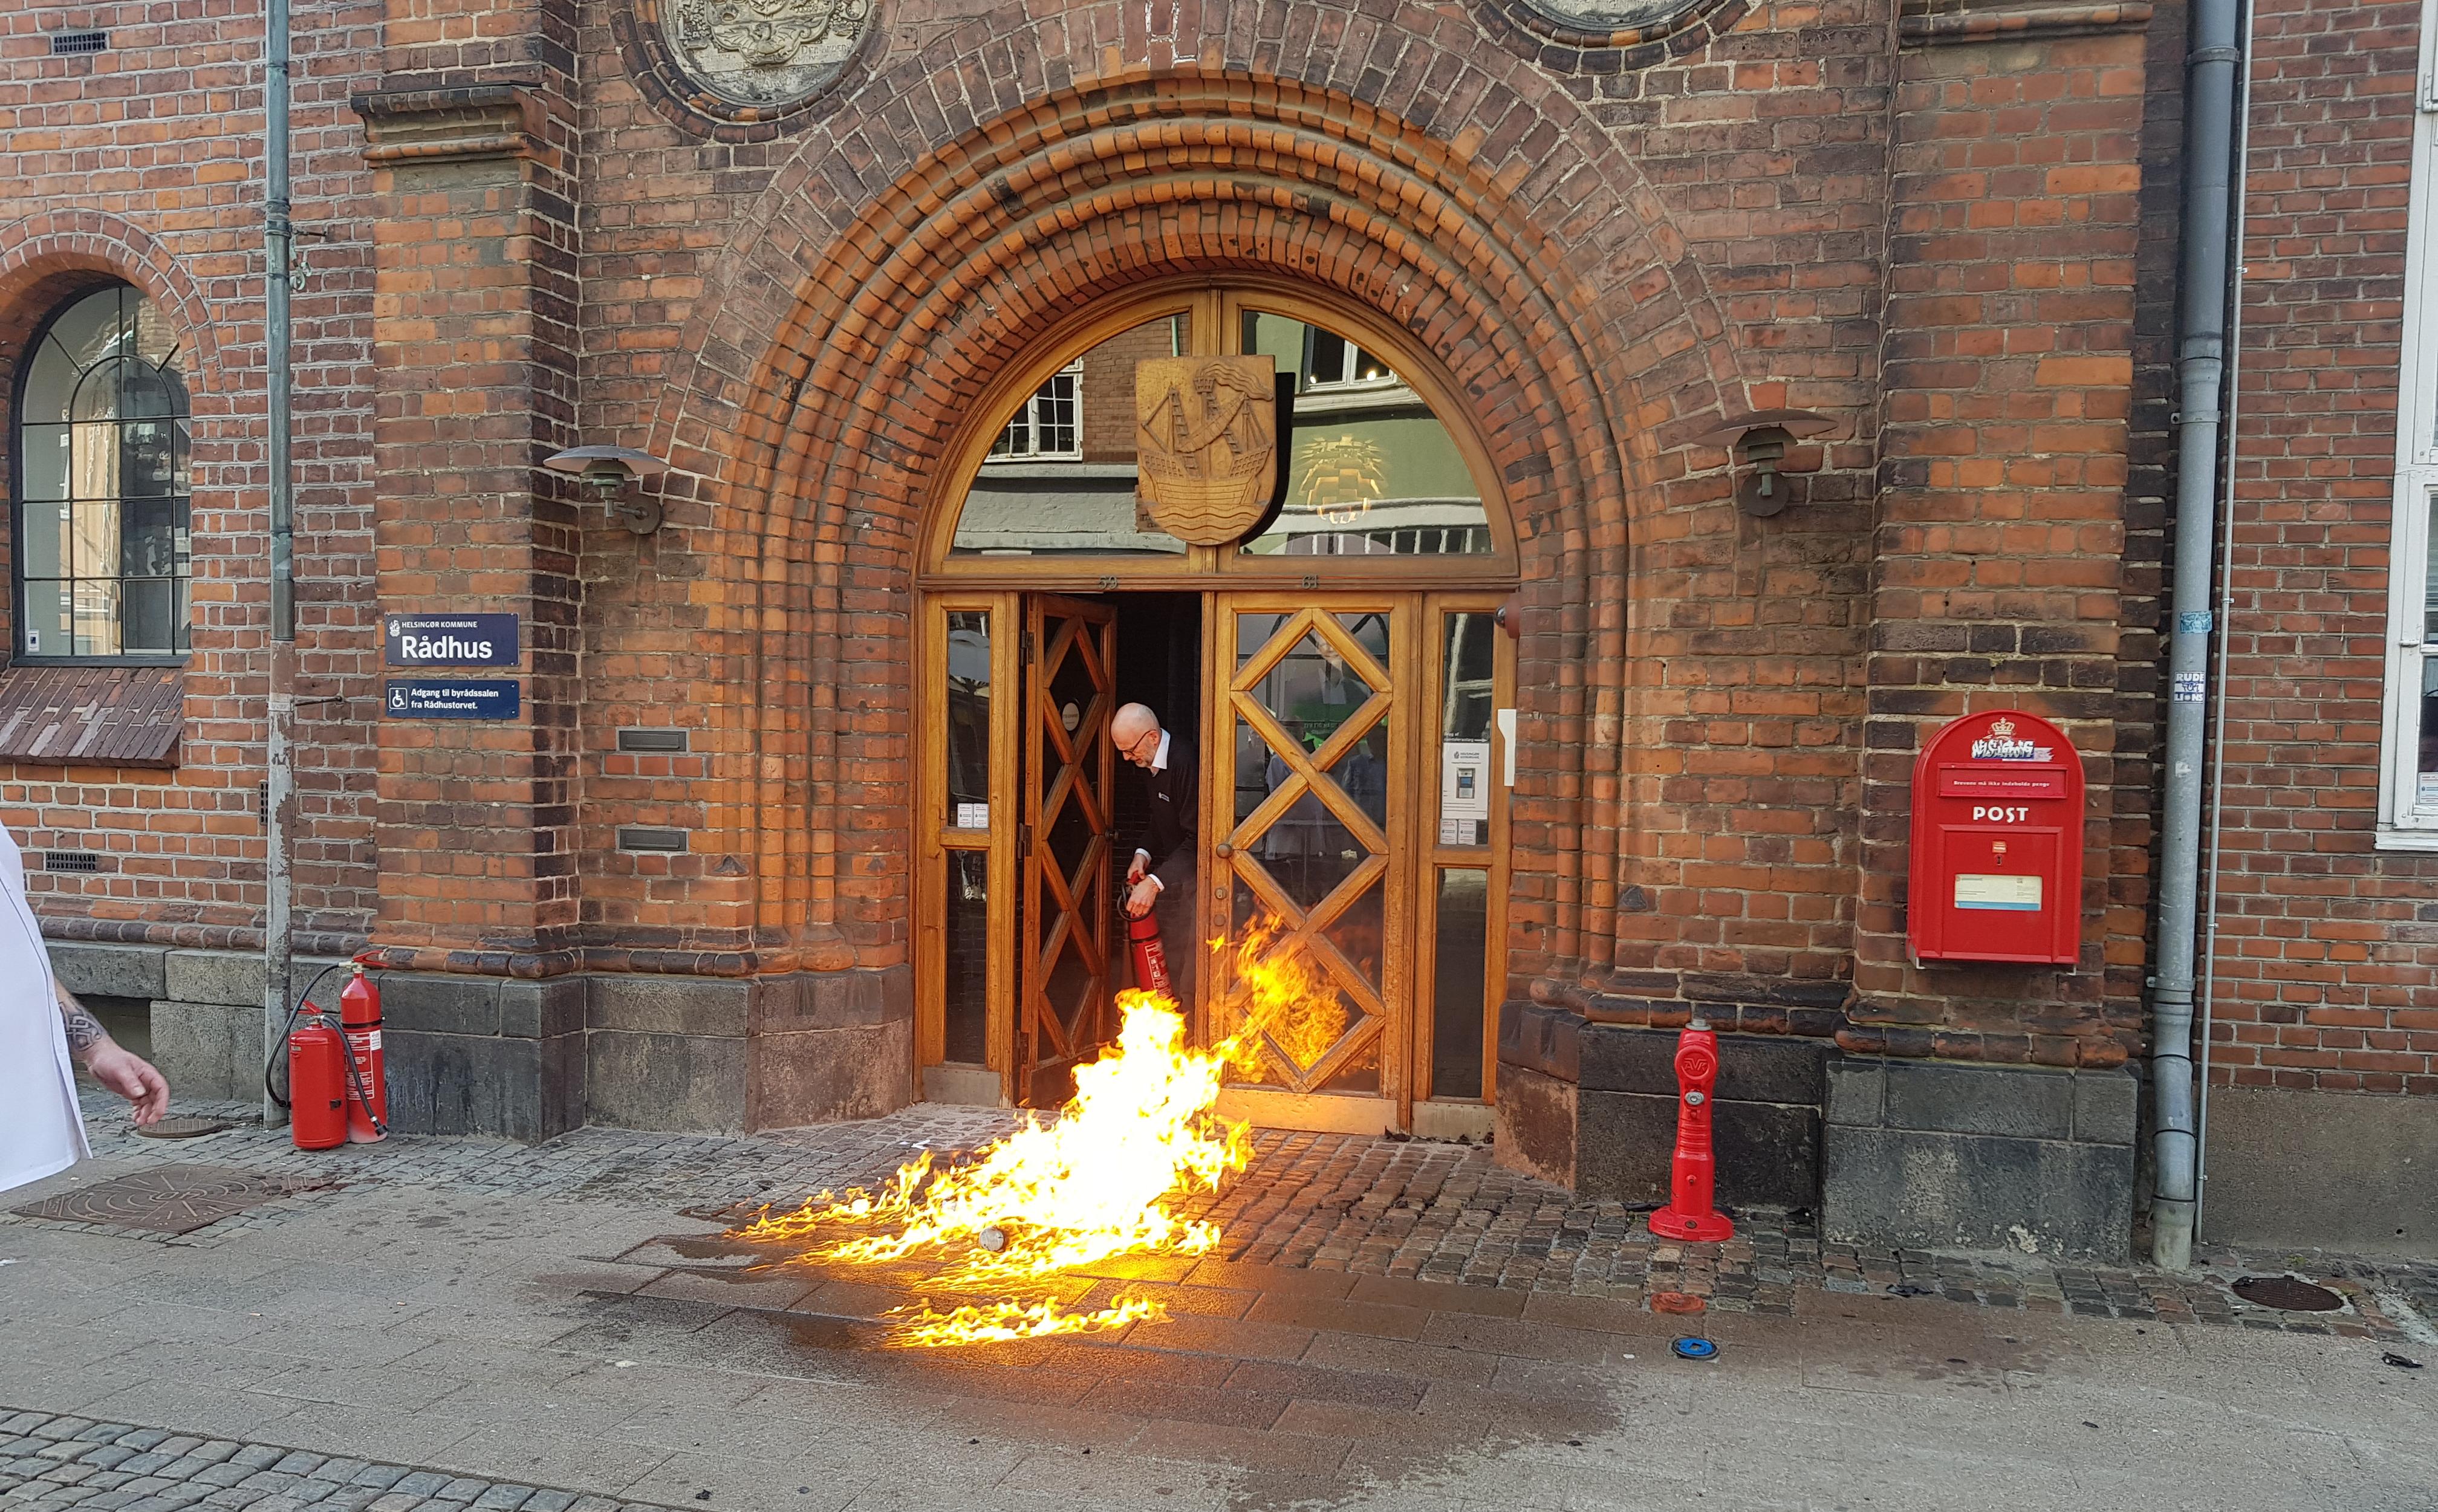 Mikael at brandattentat på rådhus blev gennemført | Fagbladet FOA